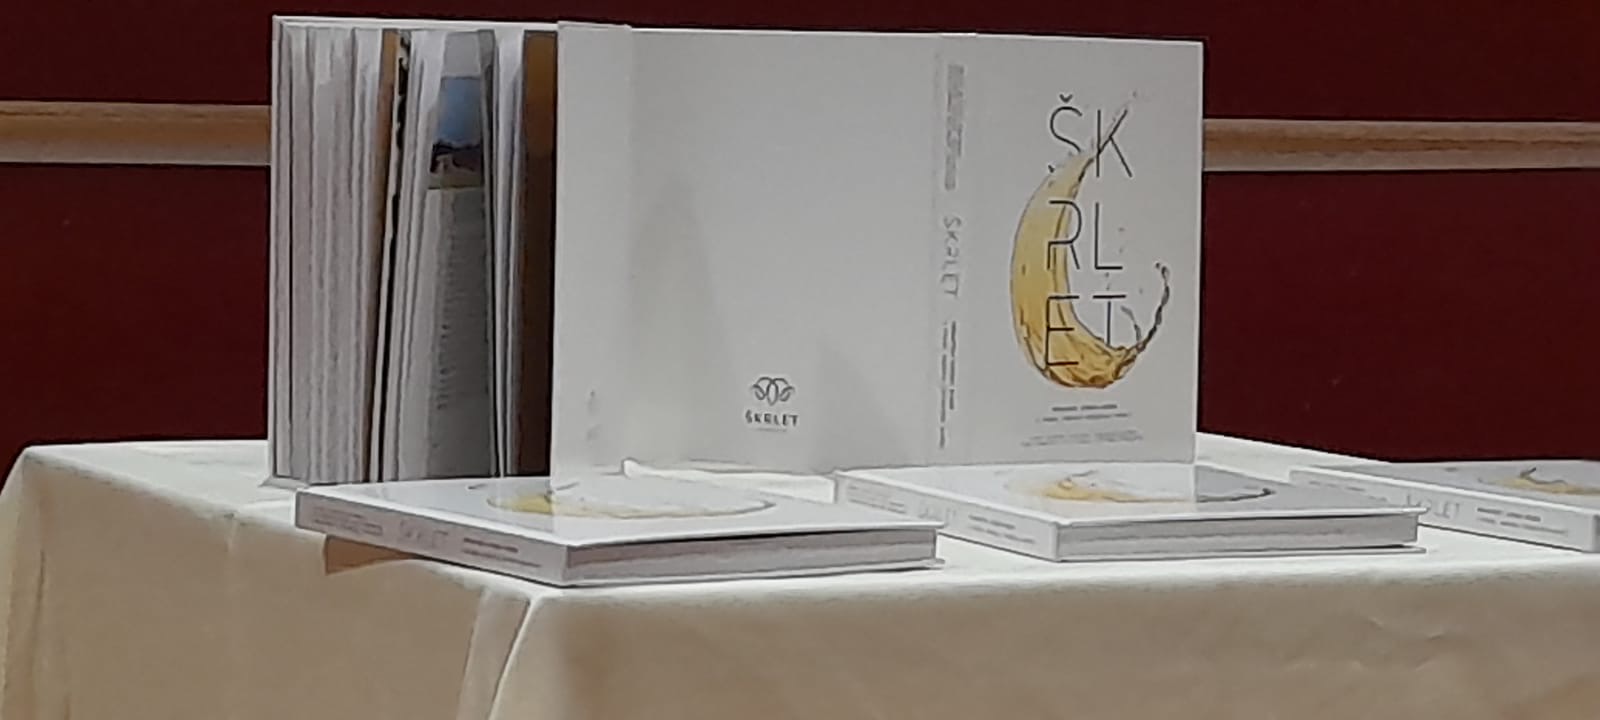 U subotu, 2. srpnja 2022. godine u Domu kulture u Kutini održana je promocija knjige "Škrlet-hrvatski vinski biser".